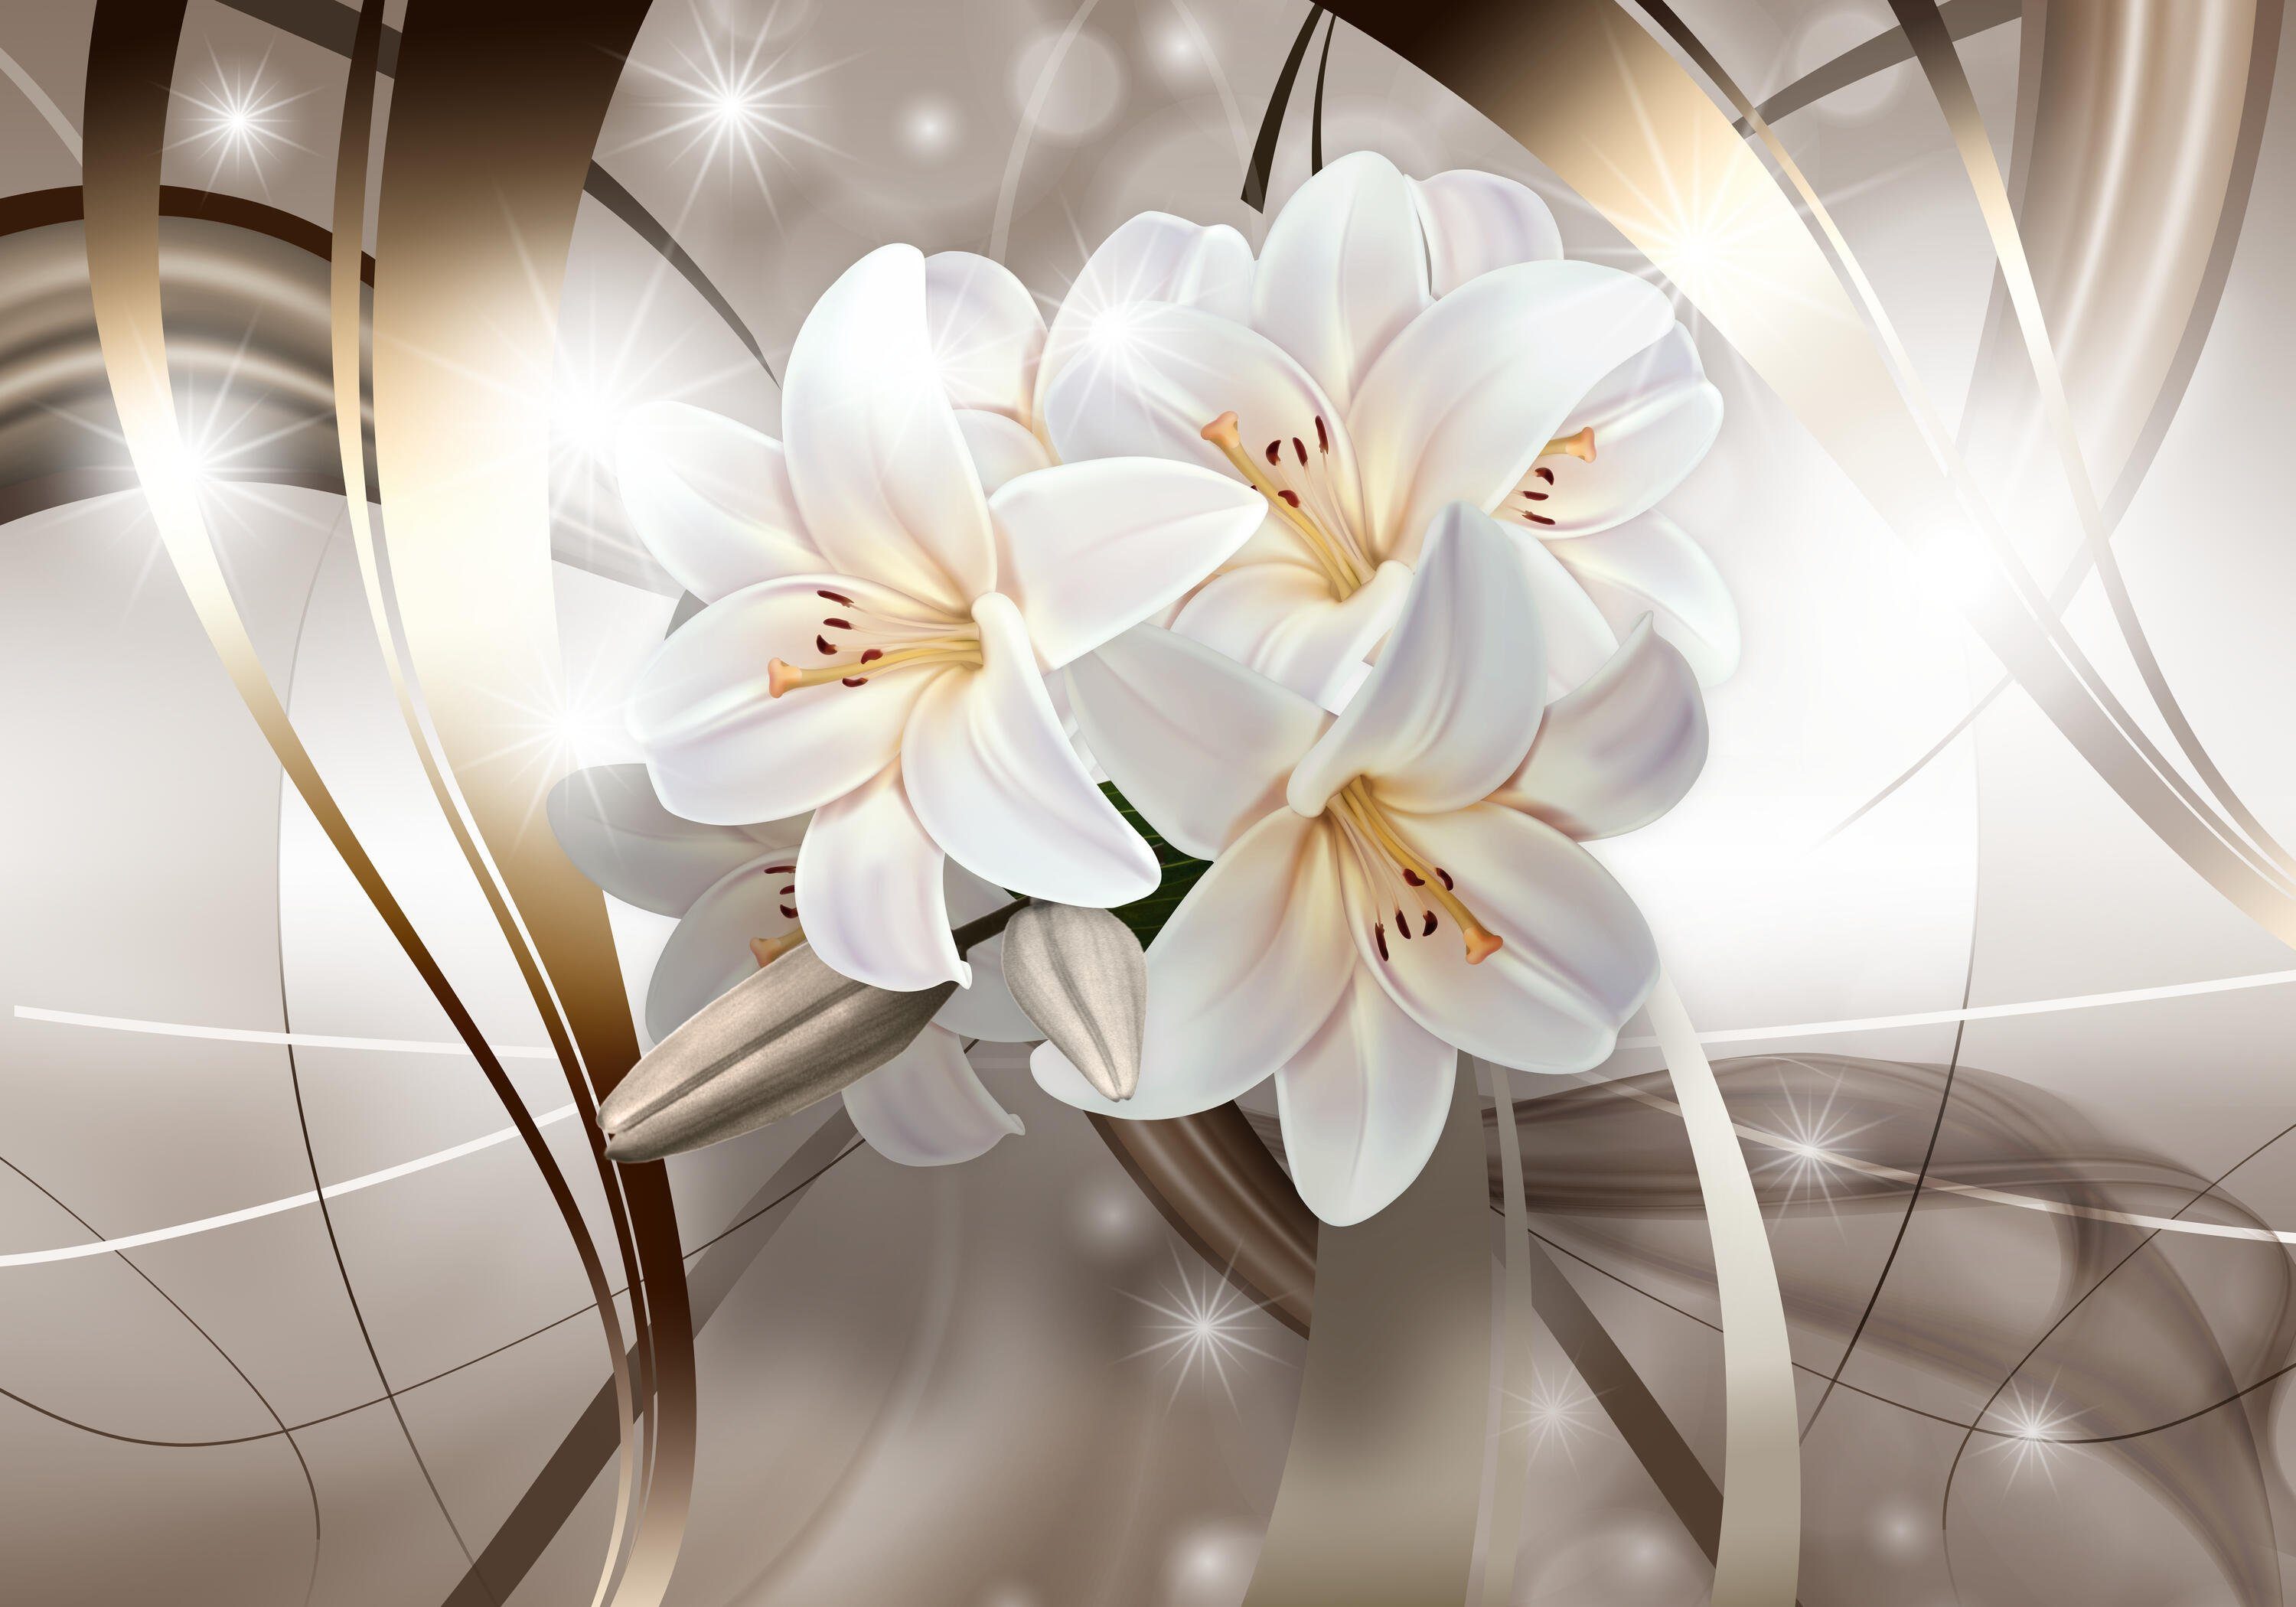 wandmotiv24 Fototapete weiße Lilien Blüten, glatt, Wandtapete, Motivtapete, matt, Vliestapete